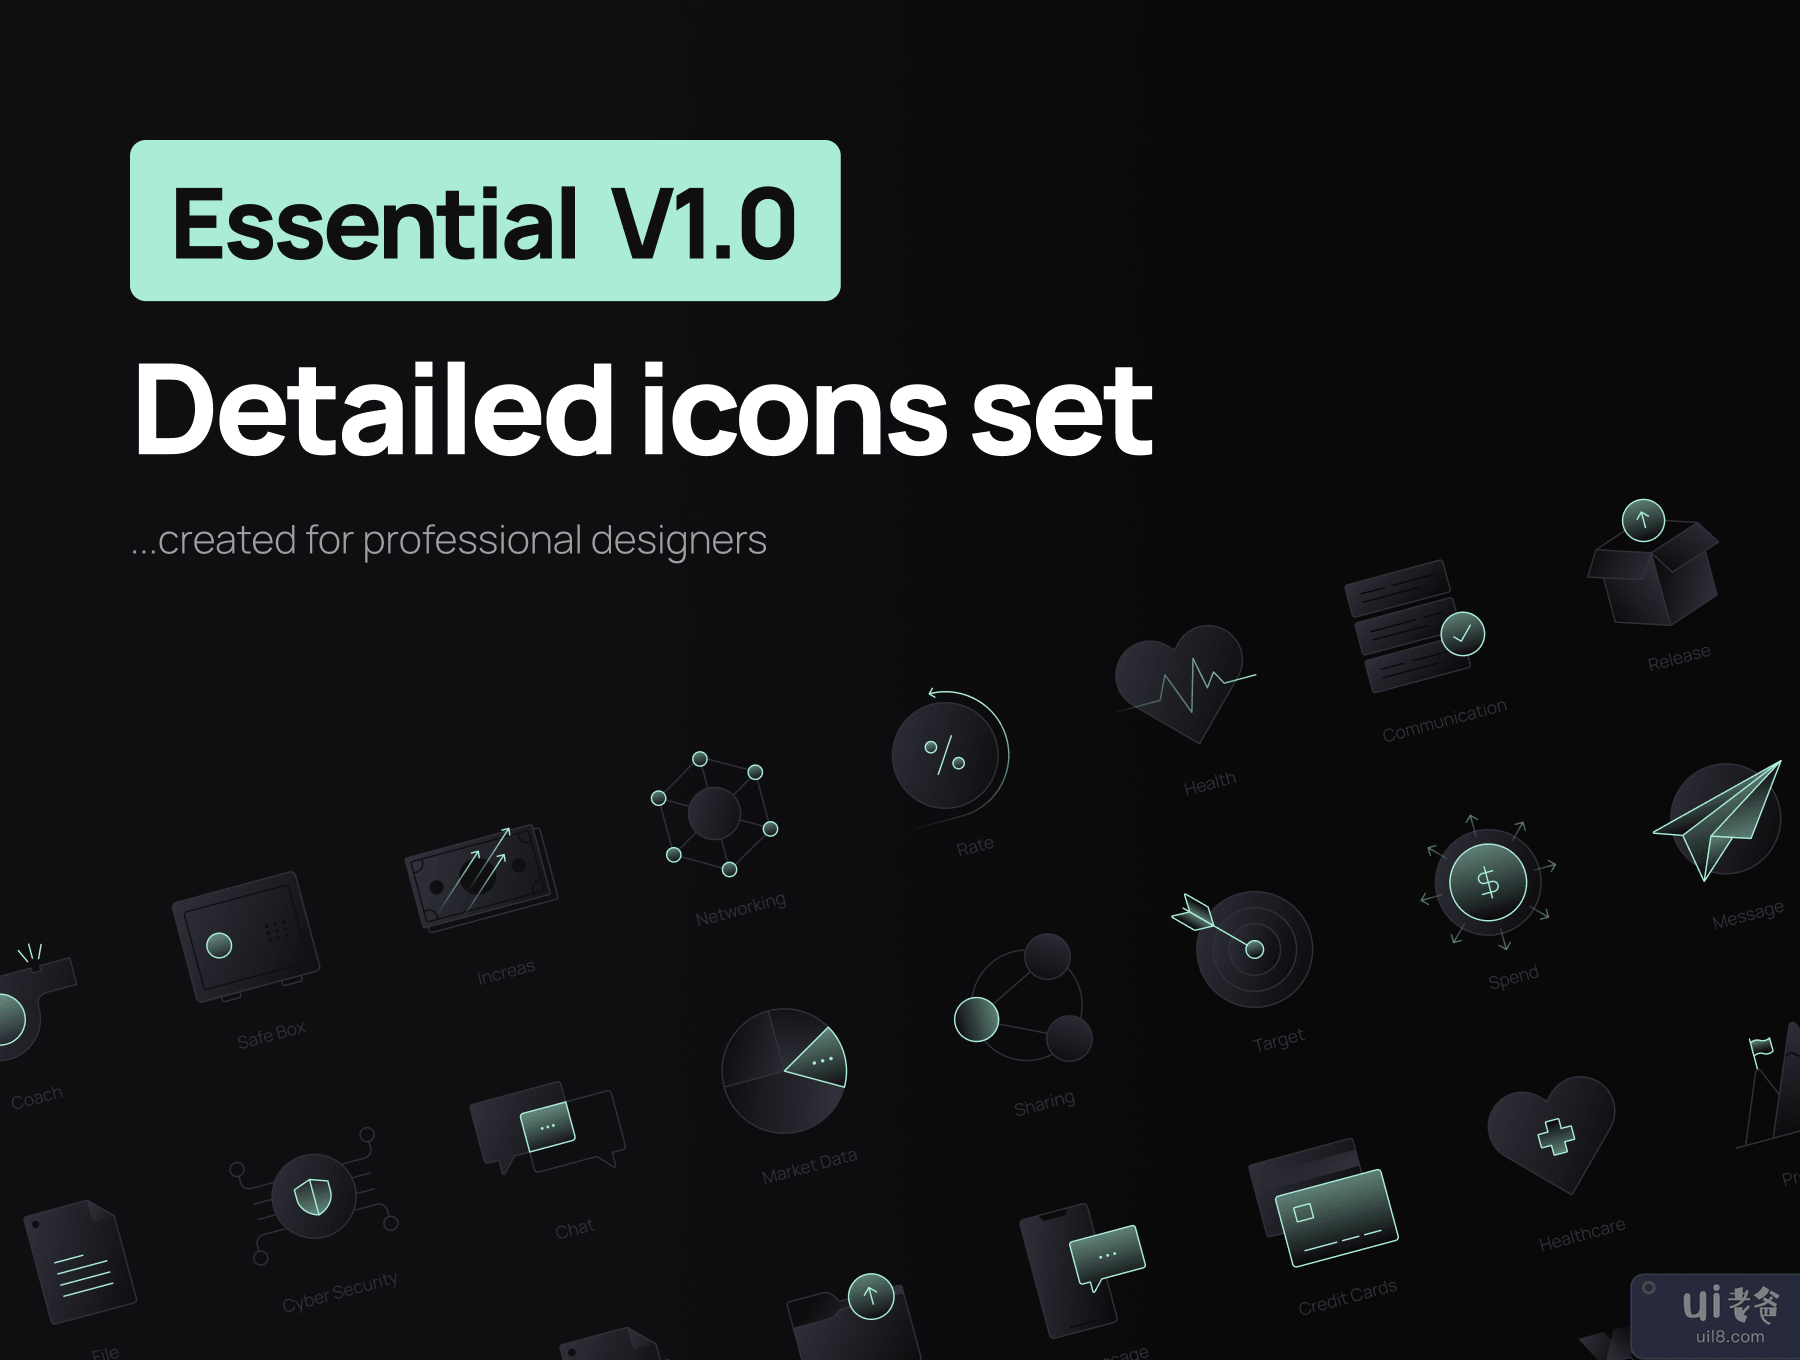 必备 V1.0 详细图标集 (Essential V1.0 Detailed Icons Set)插图5